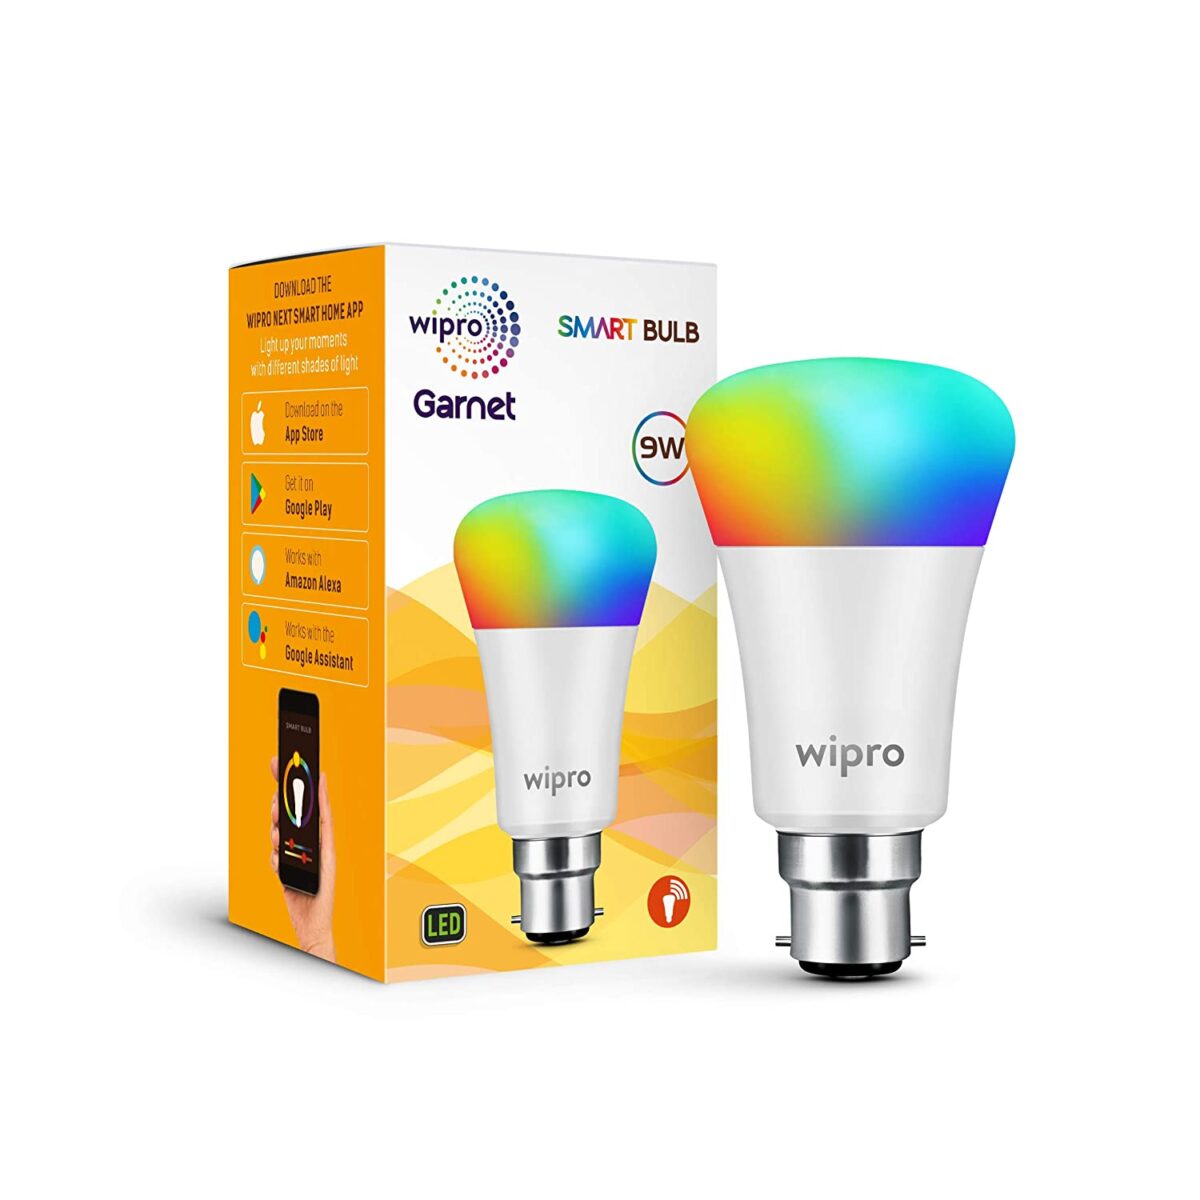 wipro Wi-Fi Enabled Smart LED Bulb B22 9 Watt